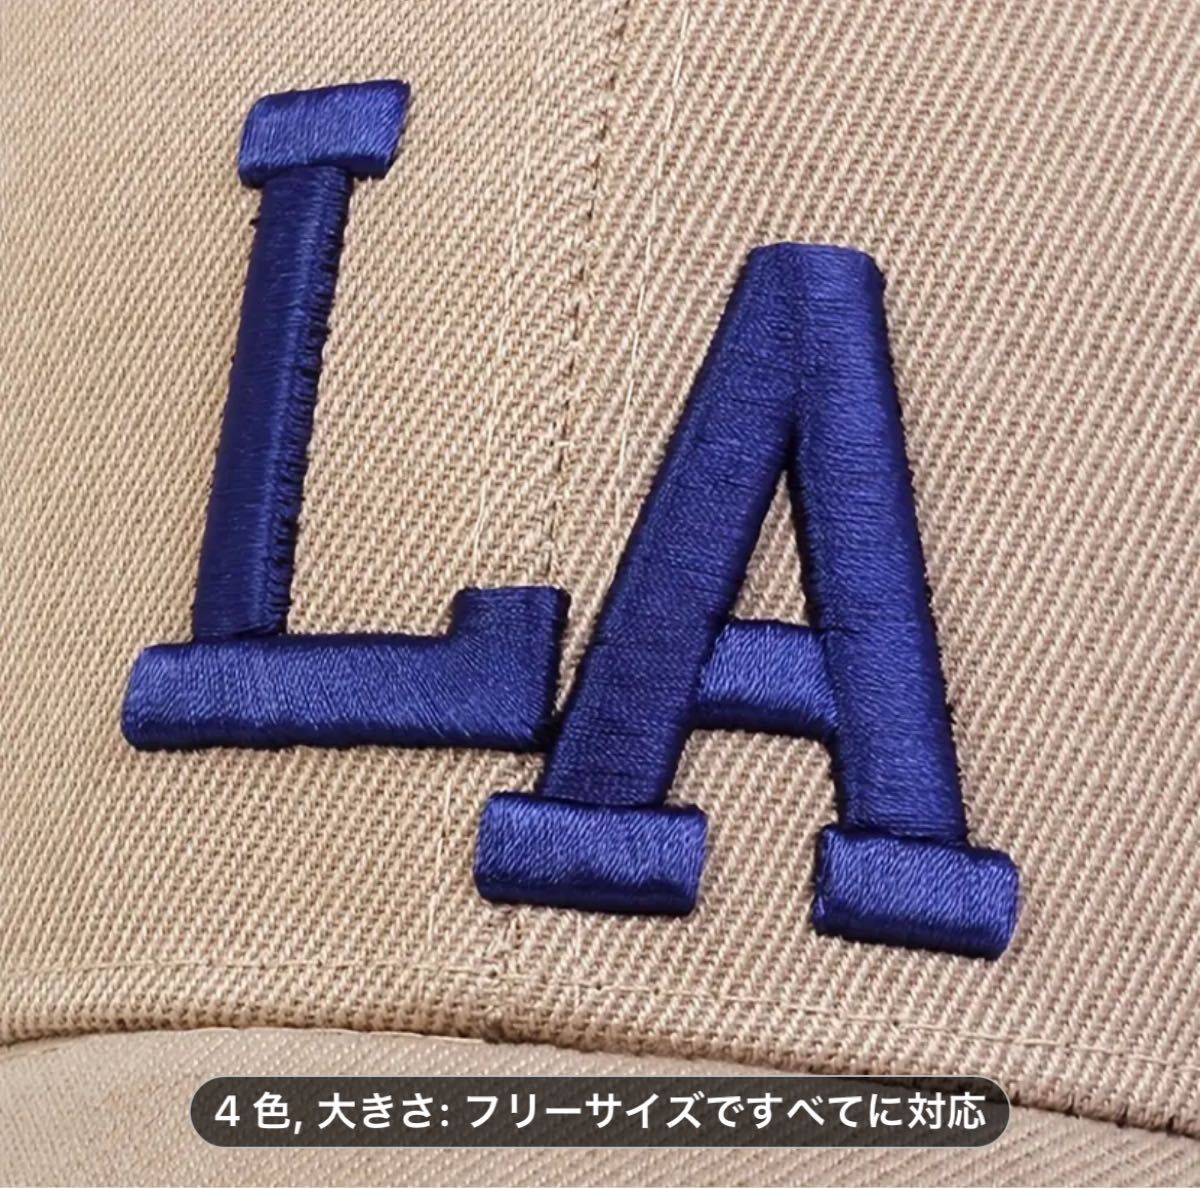 【キャップ】 帽子 男女兼用 MVP ベースボールキャップ 野球帽 LA ベージュ ブルー ユニセックス カジュアル ストリート